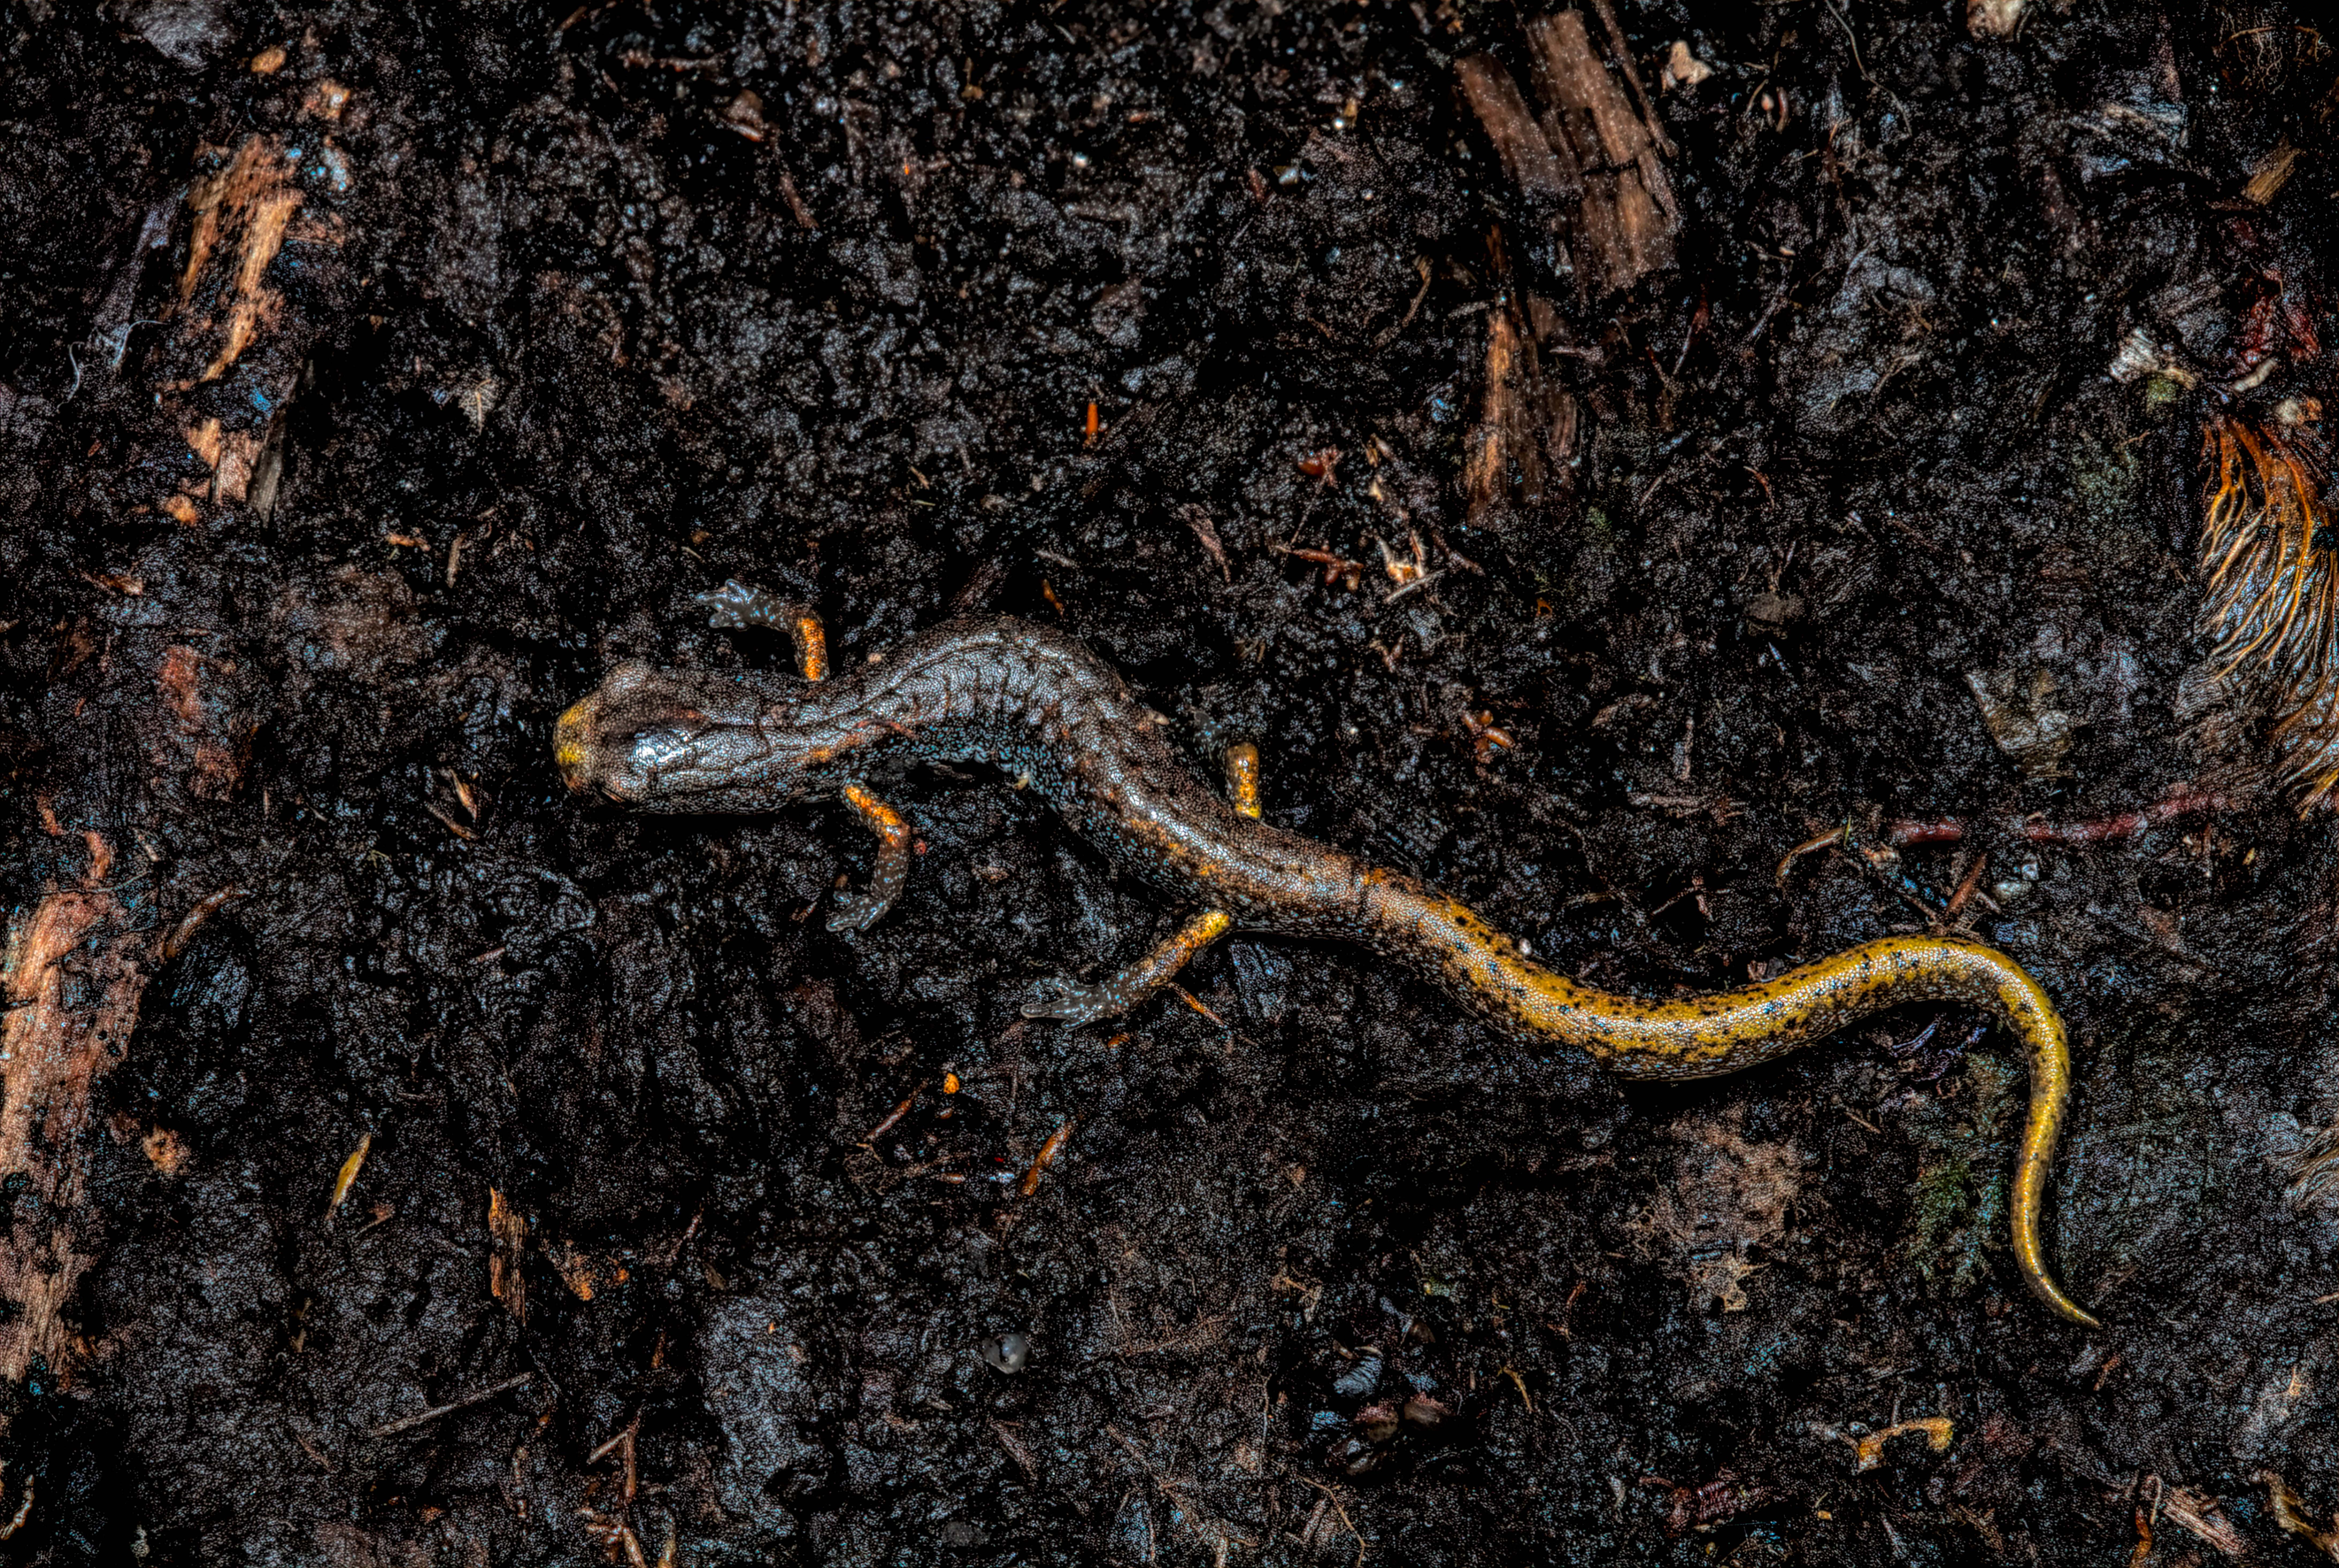 Four-toed salamander (Hemidactylium scutatum).